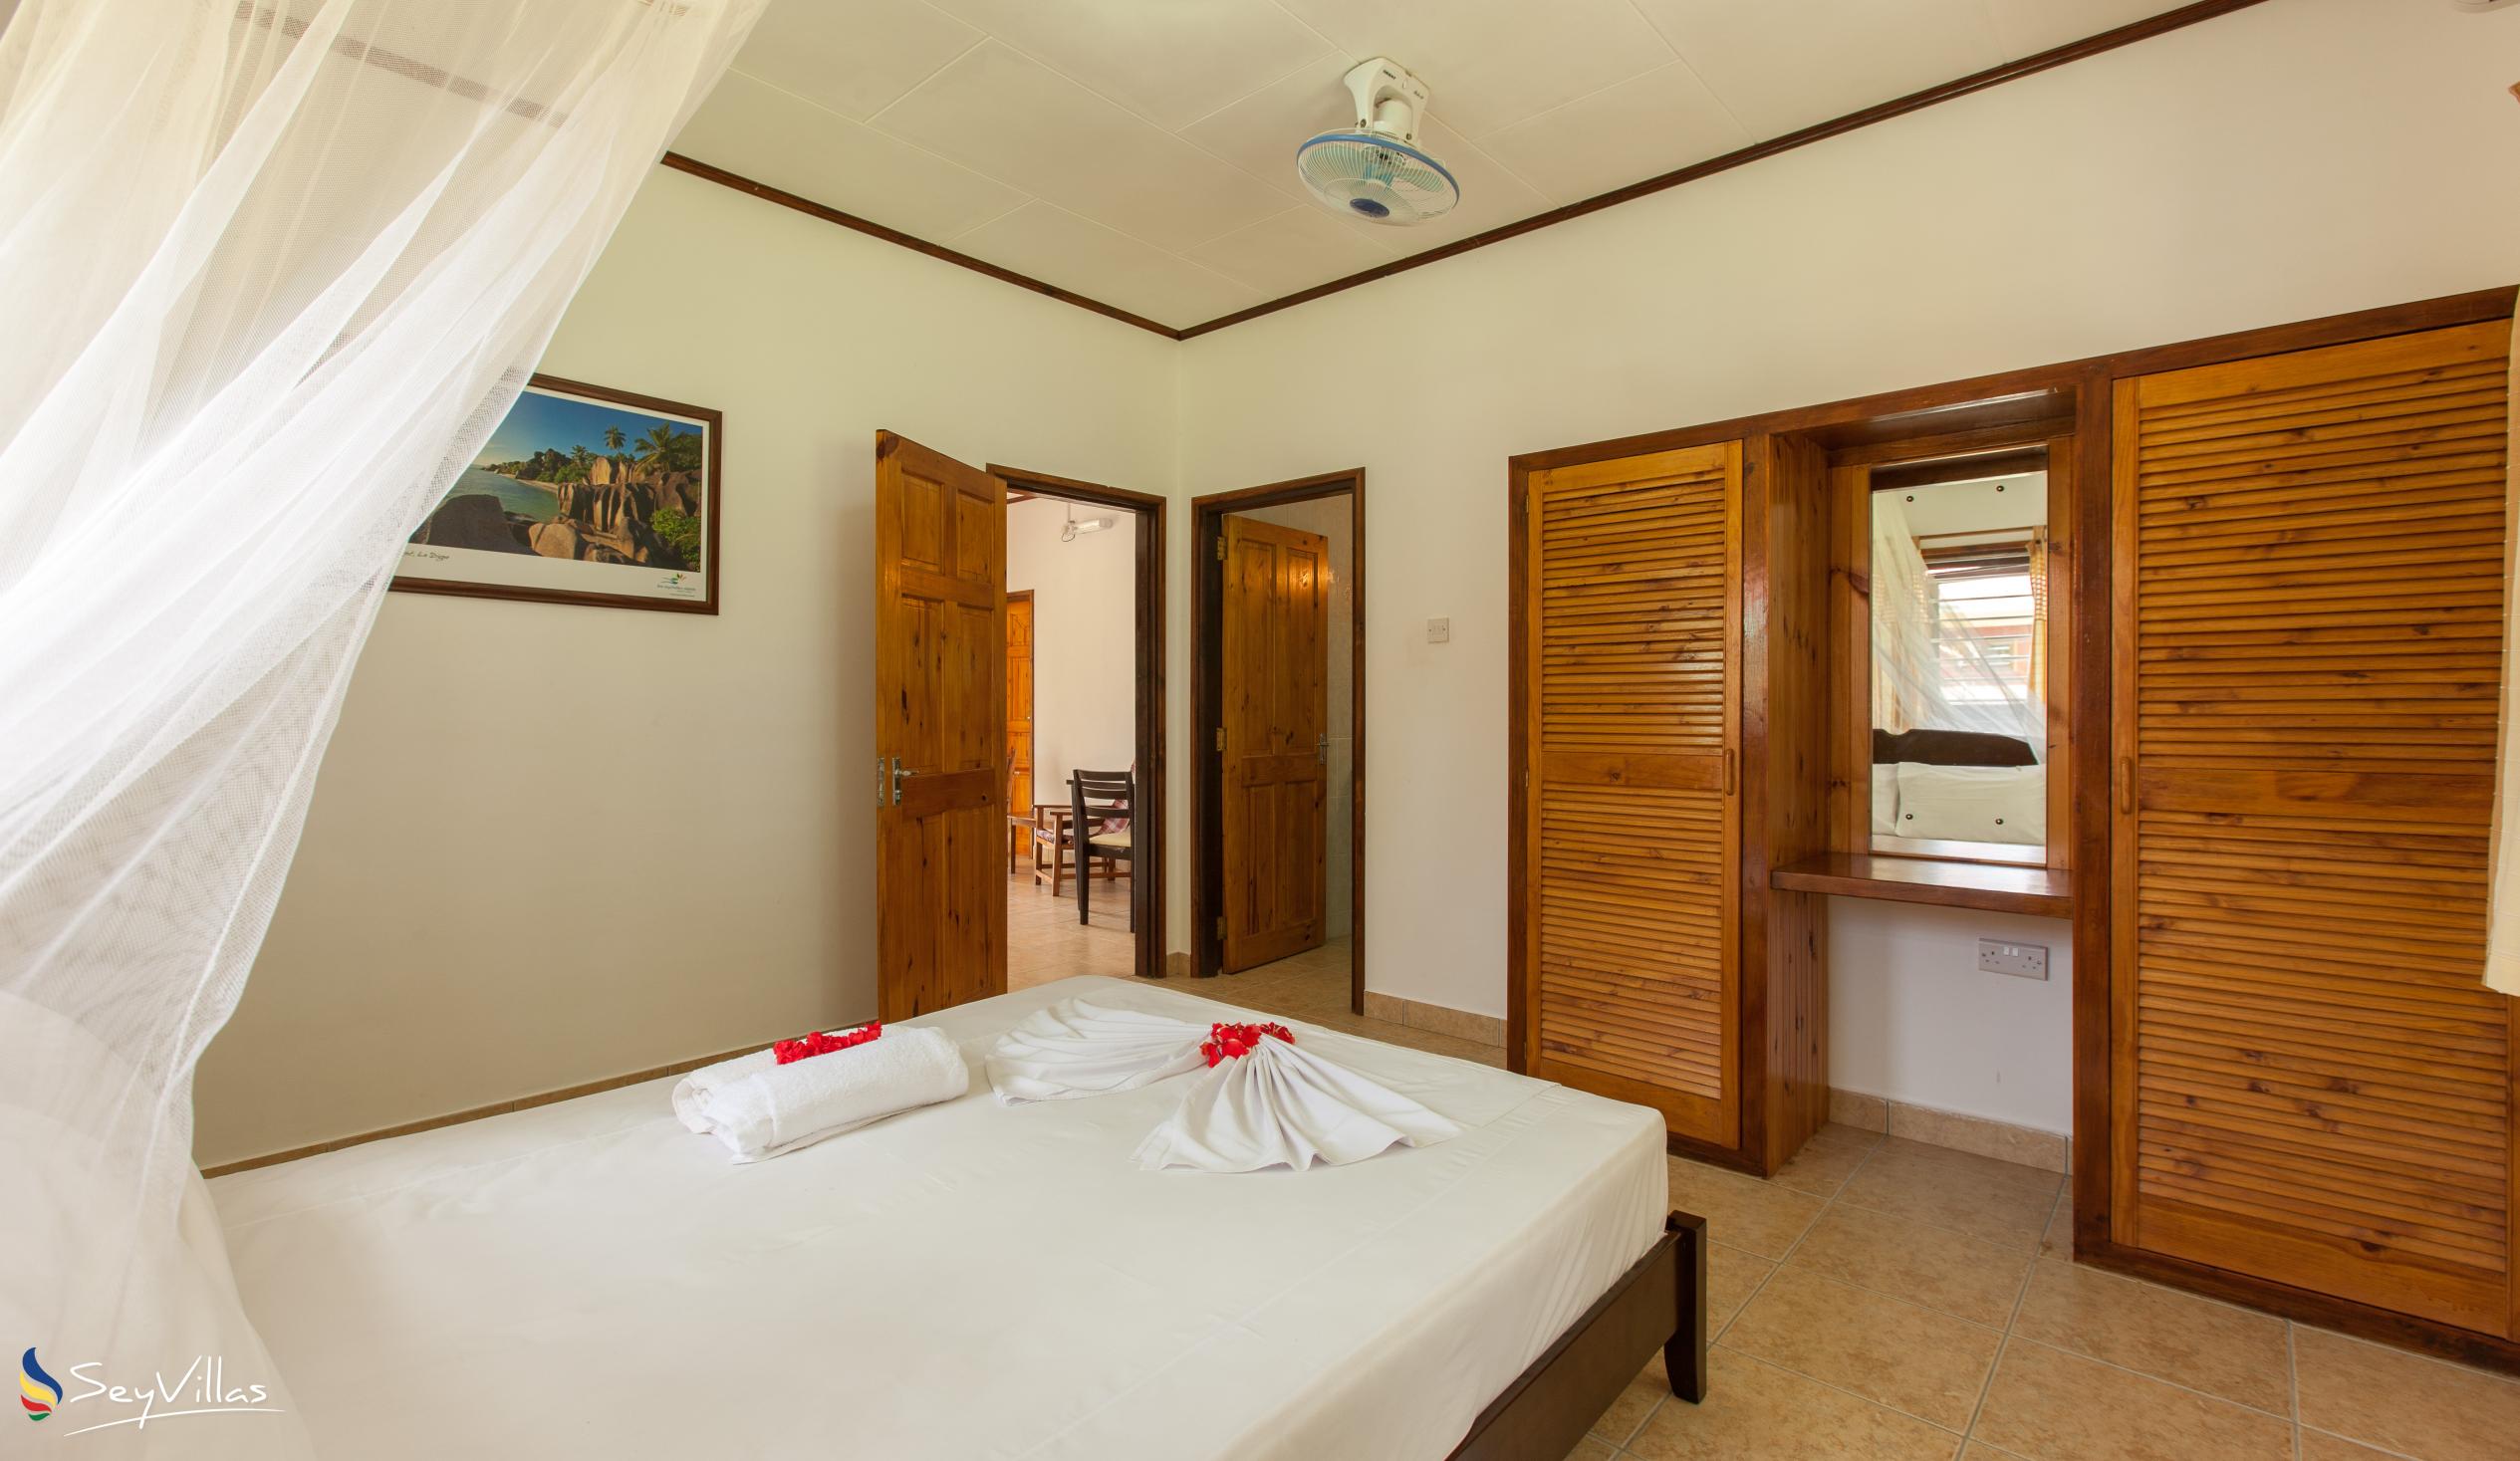 Foto 42: Zerof Self Catering  Apartments - Bungalow à 2 chambres - La Digue (Seychelles)